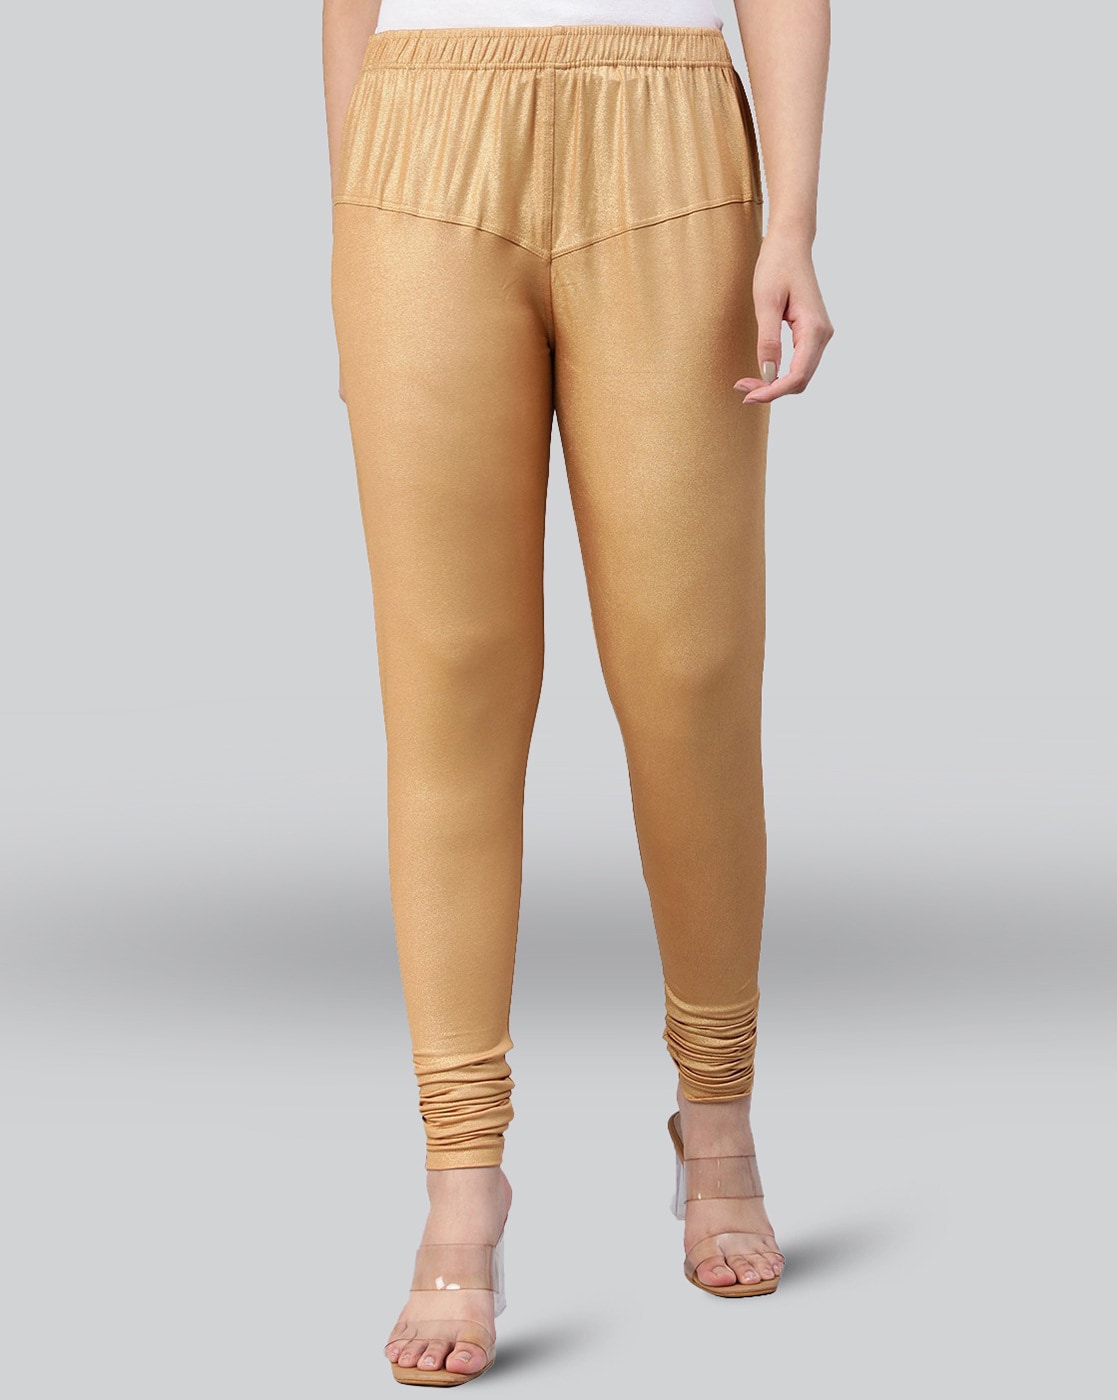 Shop Now Leggings And Dupatta Set Online Yellow Color Cotton Leggings And  Dupatta Set – Lady India